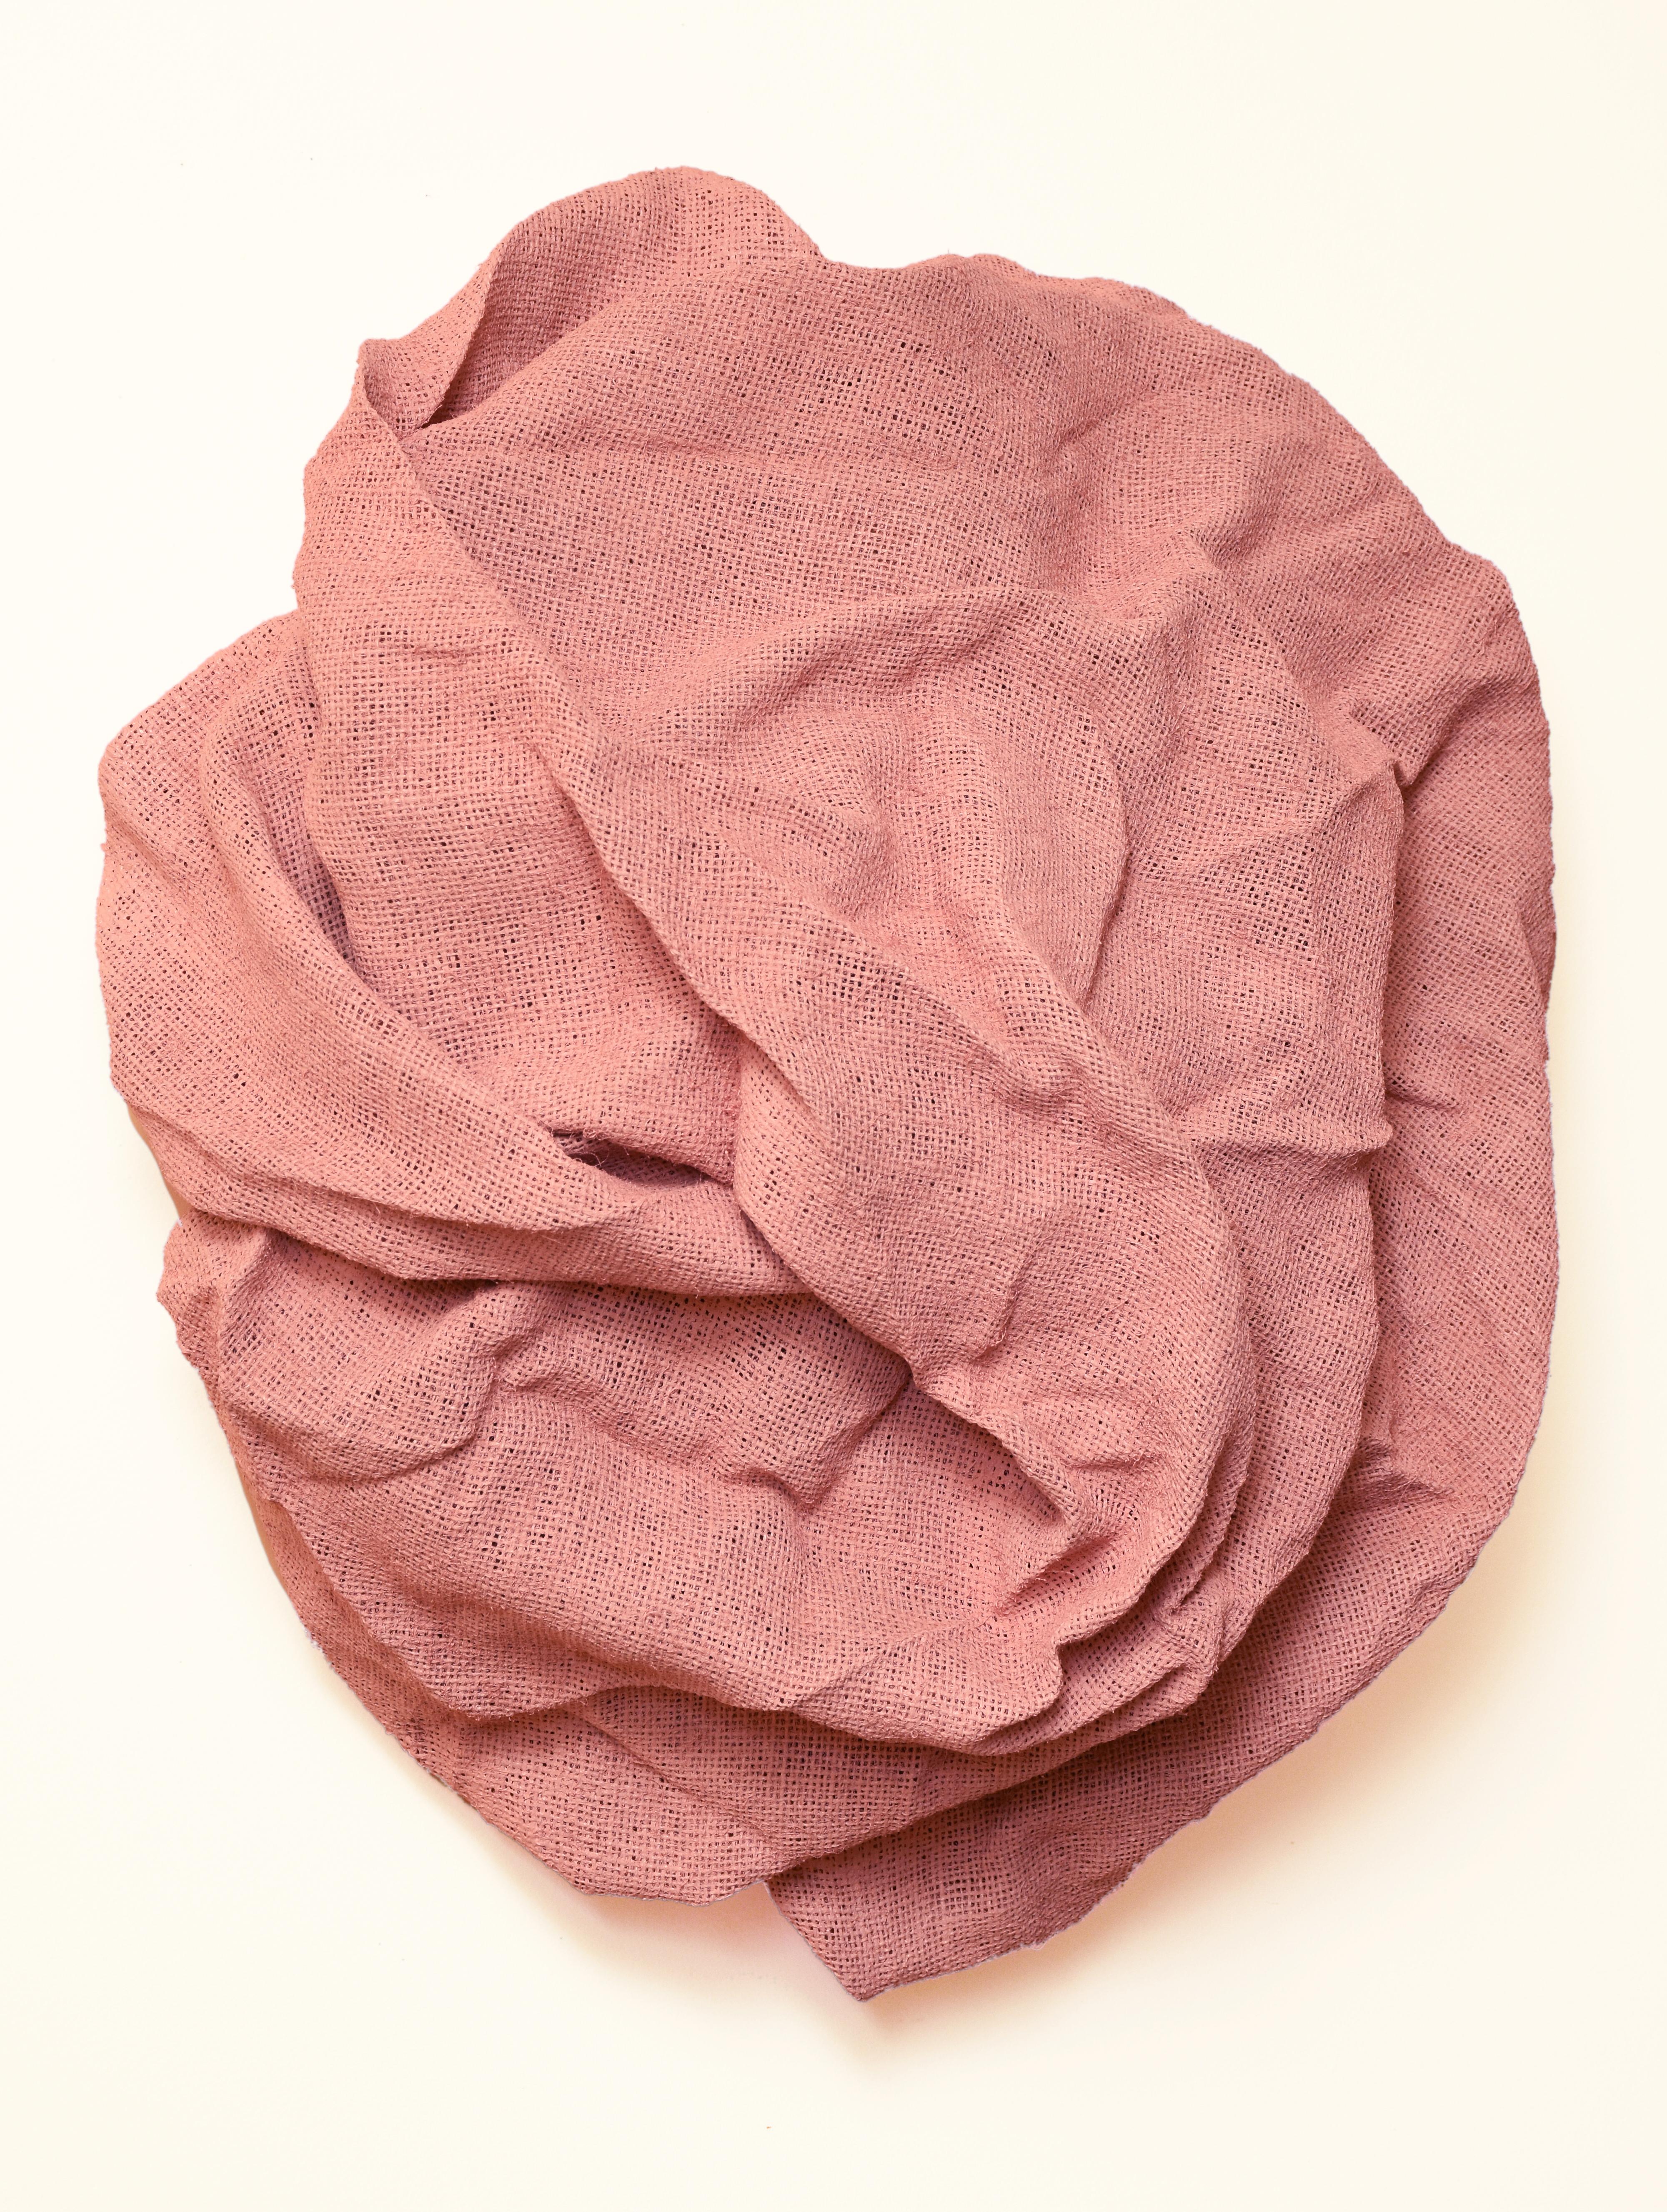 Chloe Hedden Abstract Sculpture - Ballet Pink Folds (hard fabric, textile wall sculpture, contemporary art design)